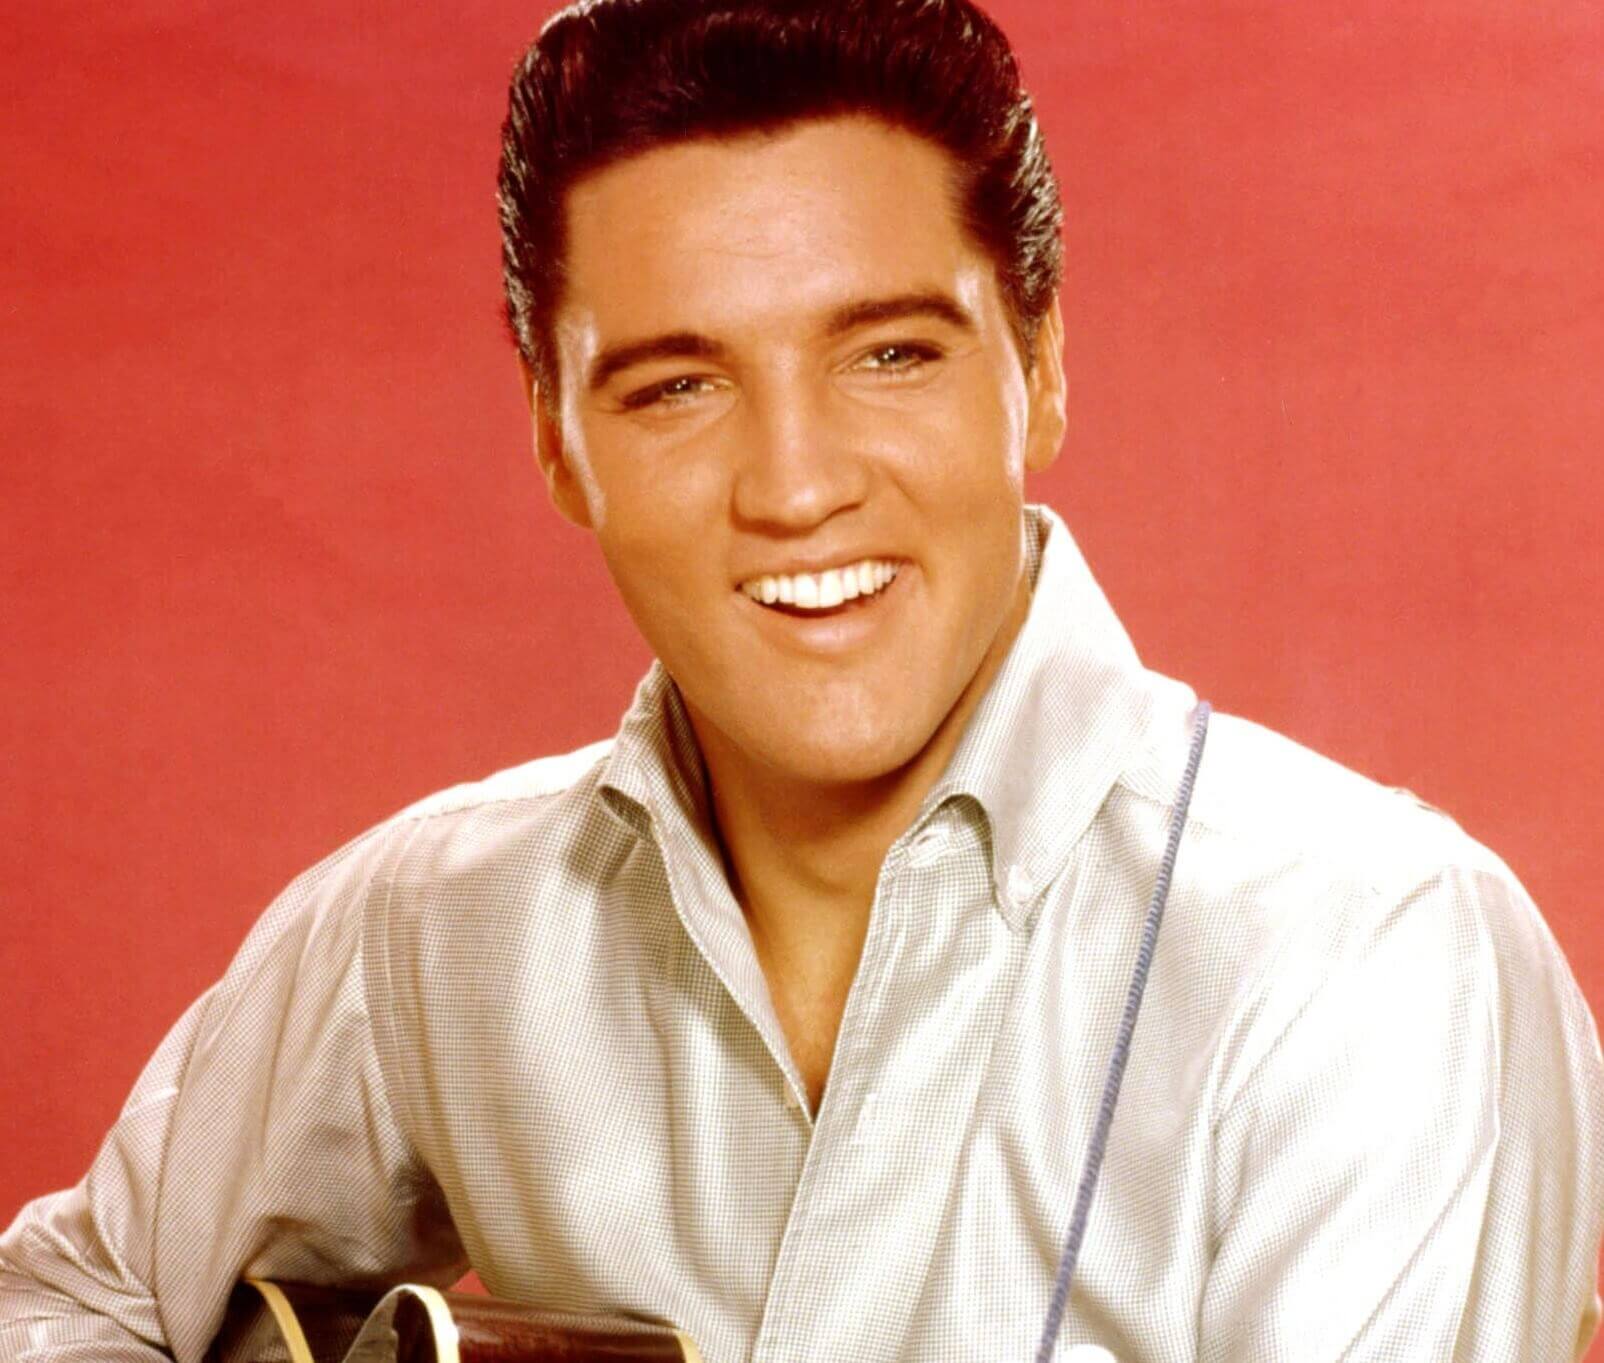 "Viva Las Vegas" singer Elvis Presley smiling